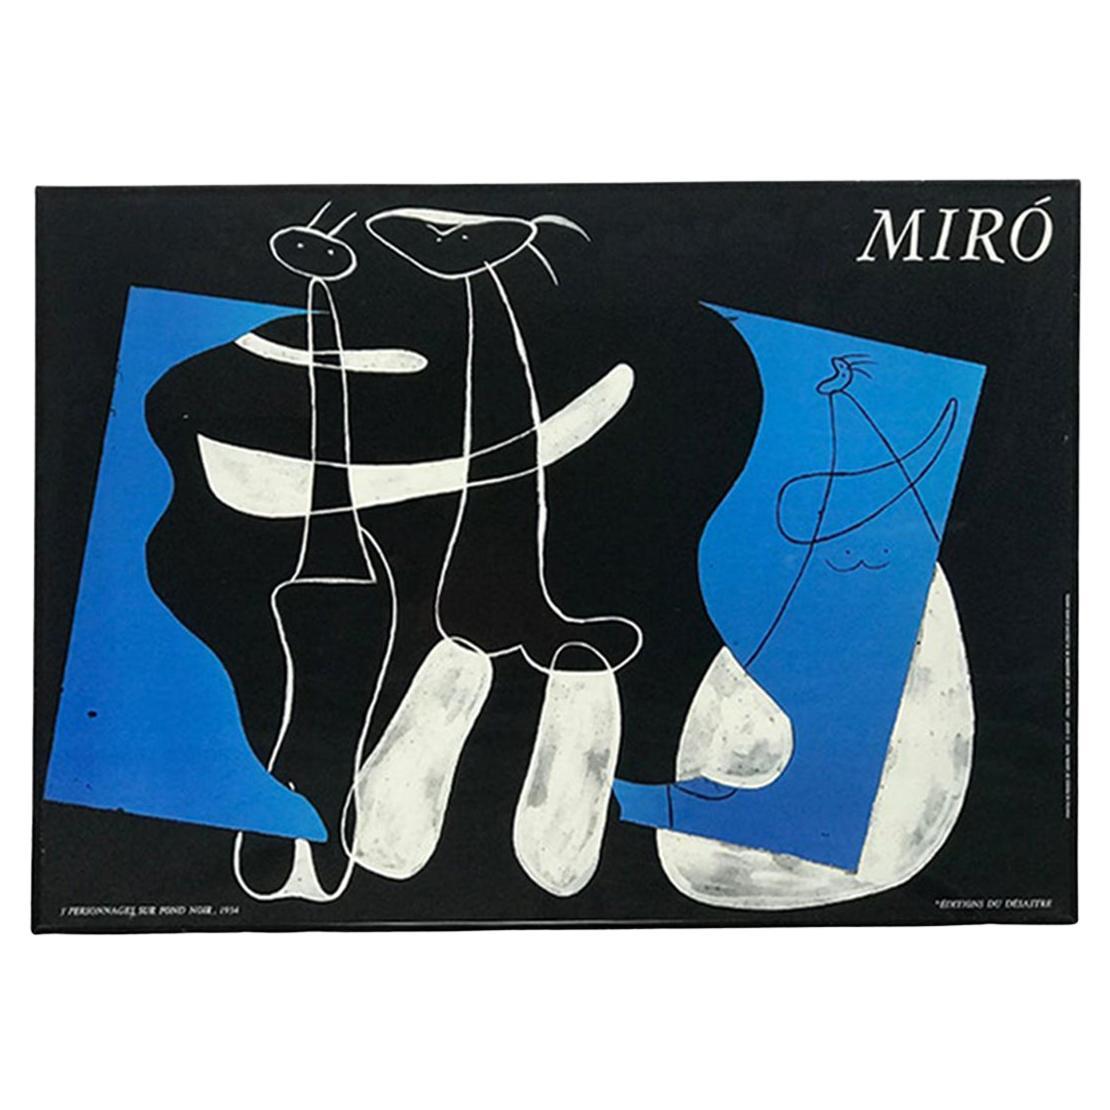 "3 Personnages sur Fond noir" by Joan Miro "Editions du Desastre"